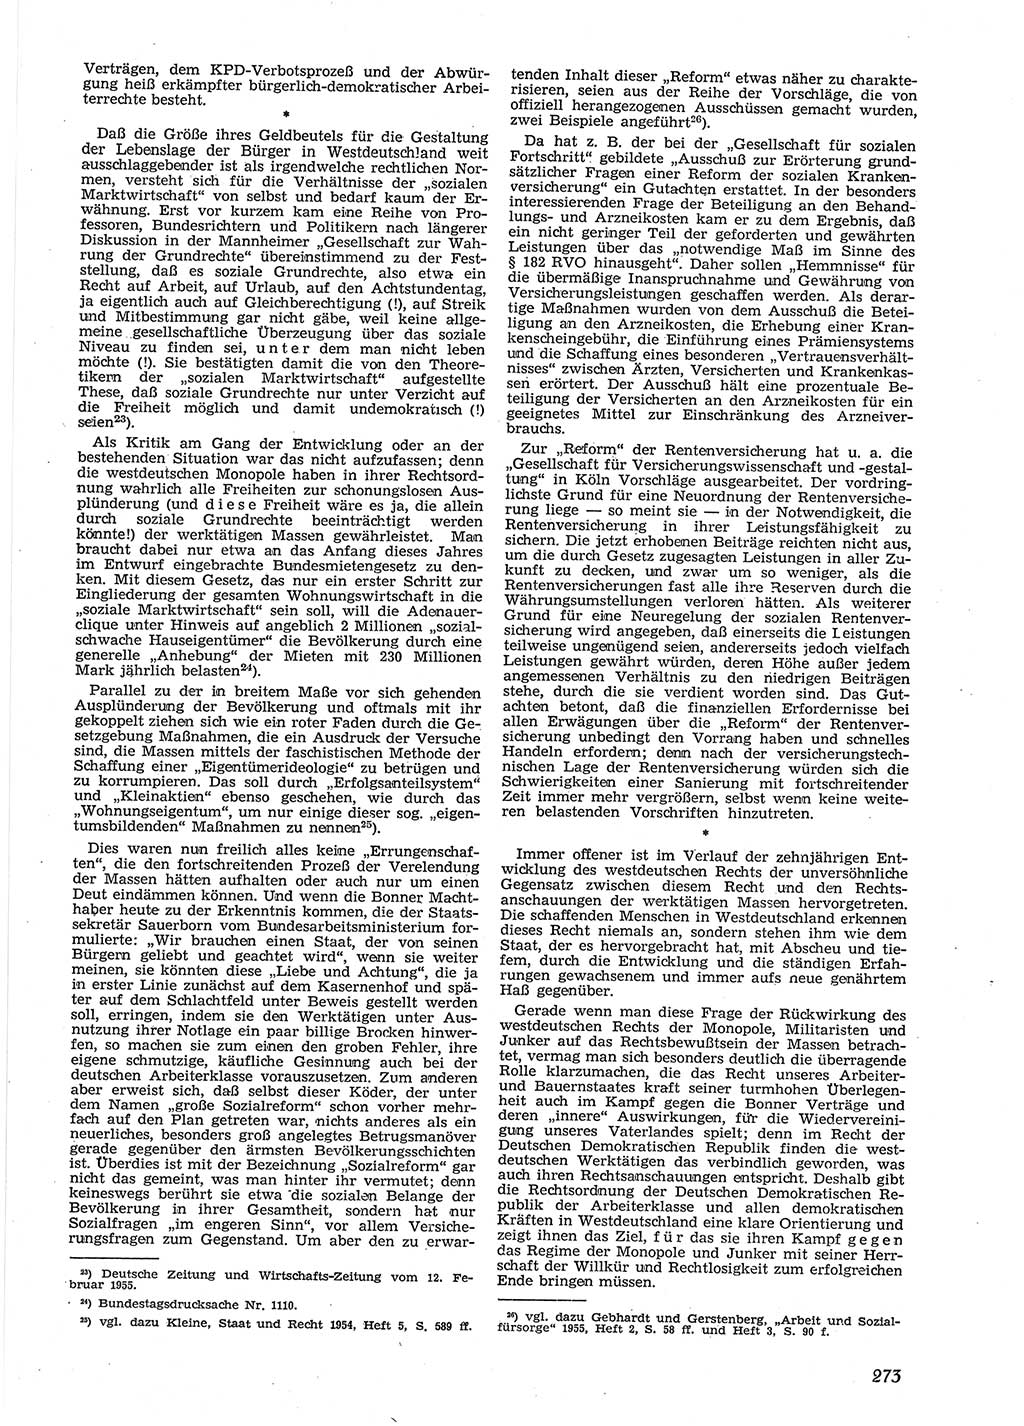 Neue Justiz (NJ), Zeitschrift für Recht und Rechtswissenschaft [Deutsche Demokratische Republik (DDR)], 9. Jahrgang 1955, Seite 273 (NJ DDR 1955, S. 273)